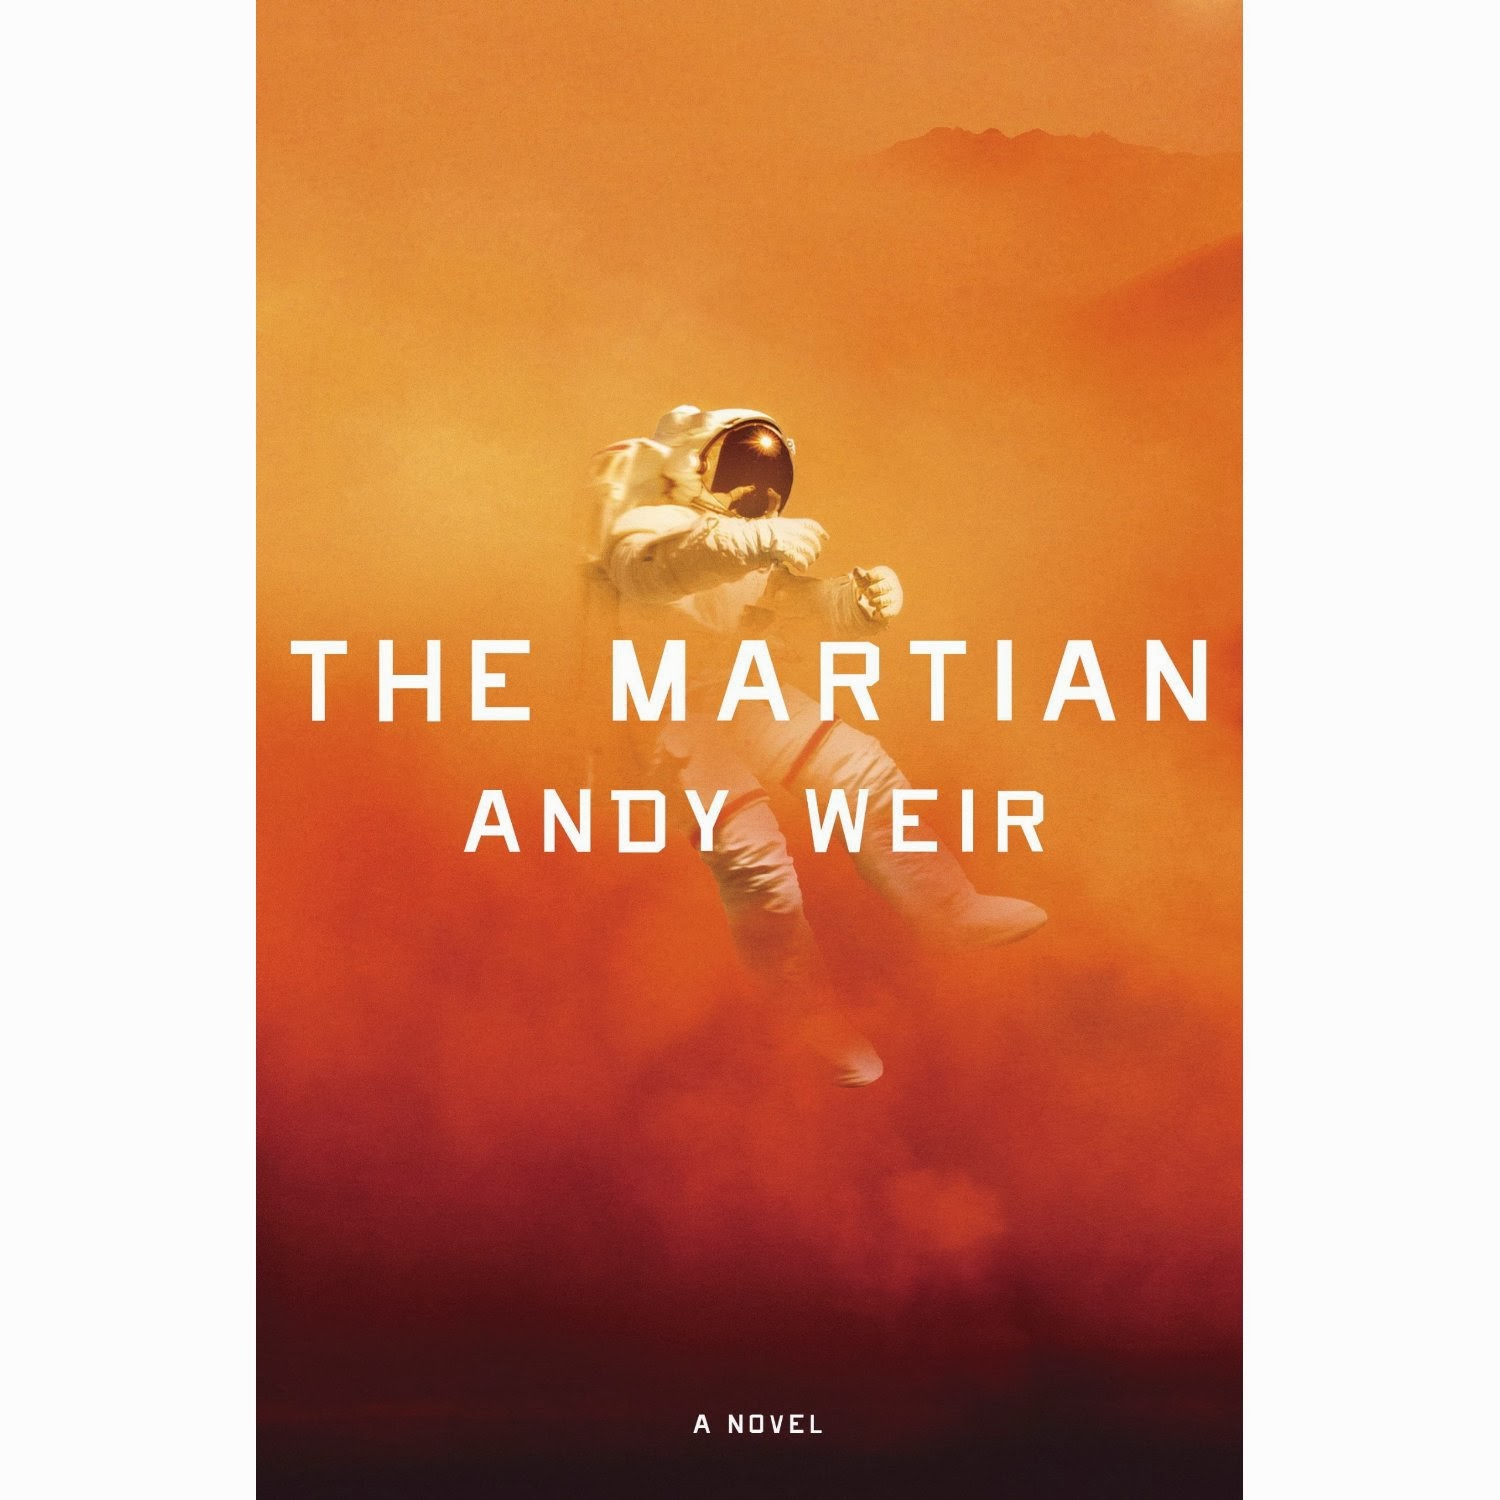 the martian weir novel